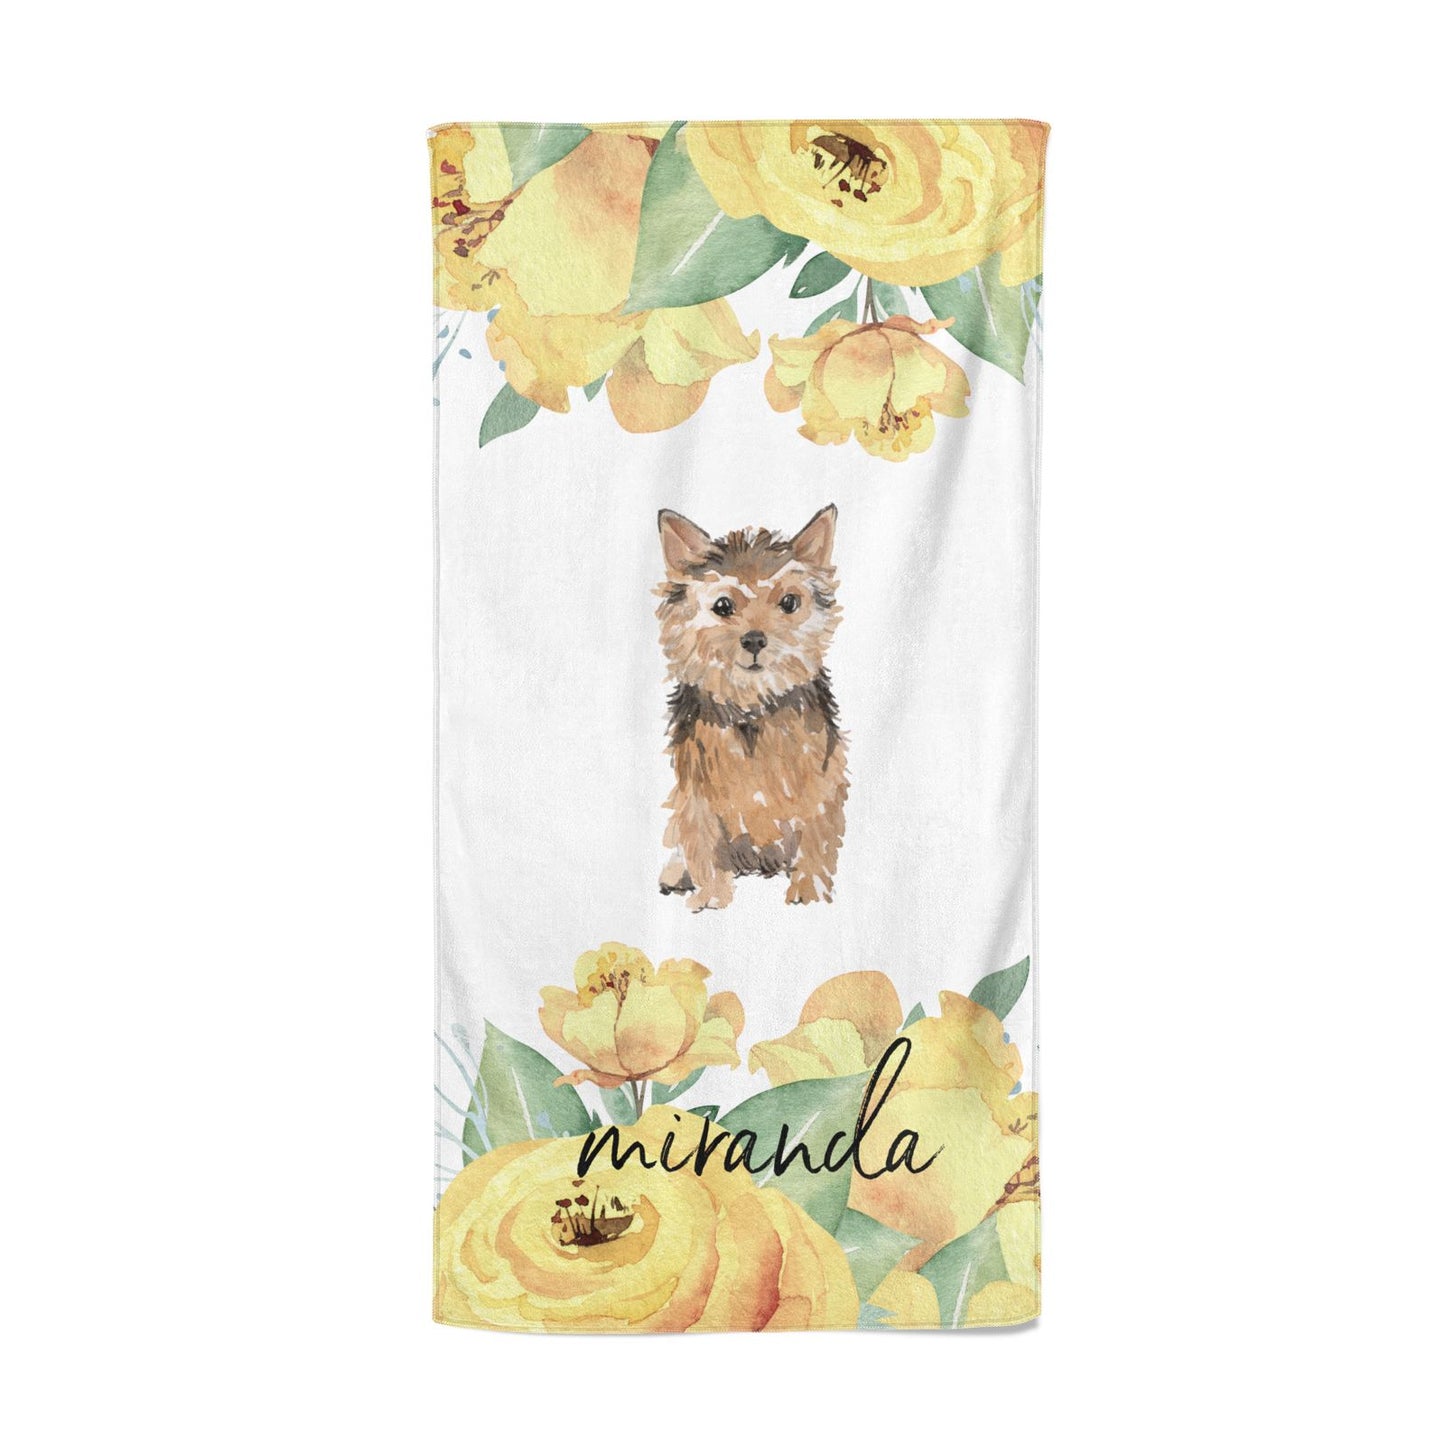 Personalised Norwich Terrier Beach Towel